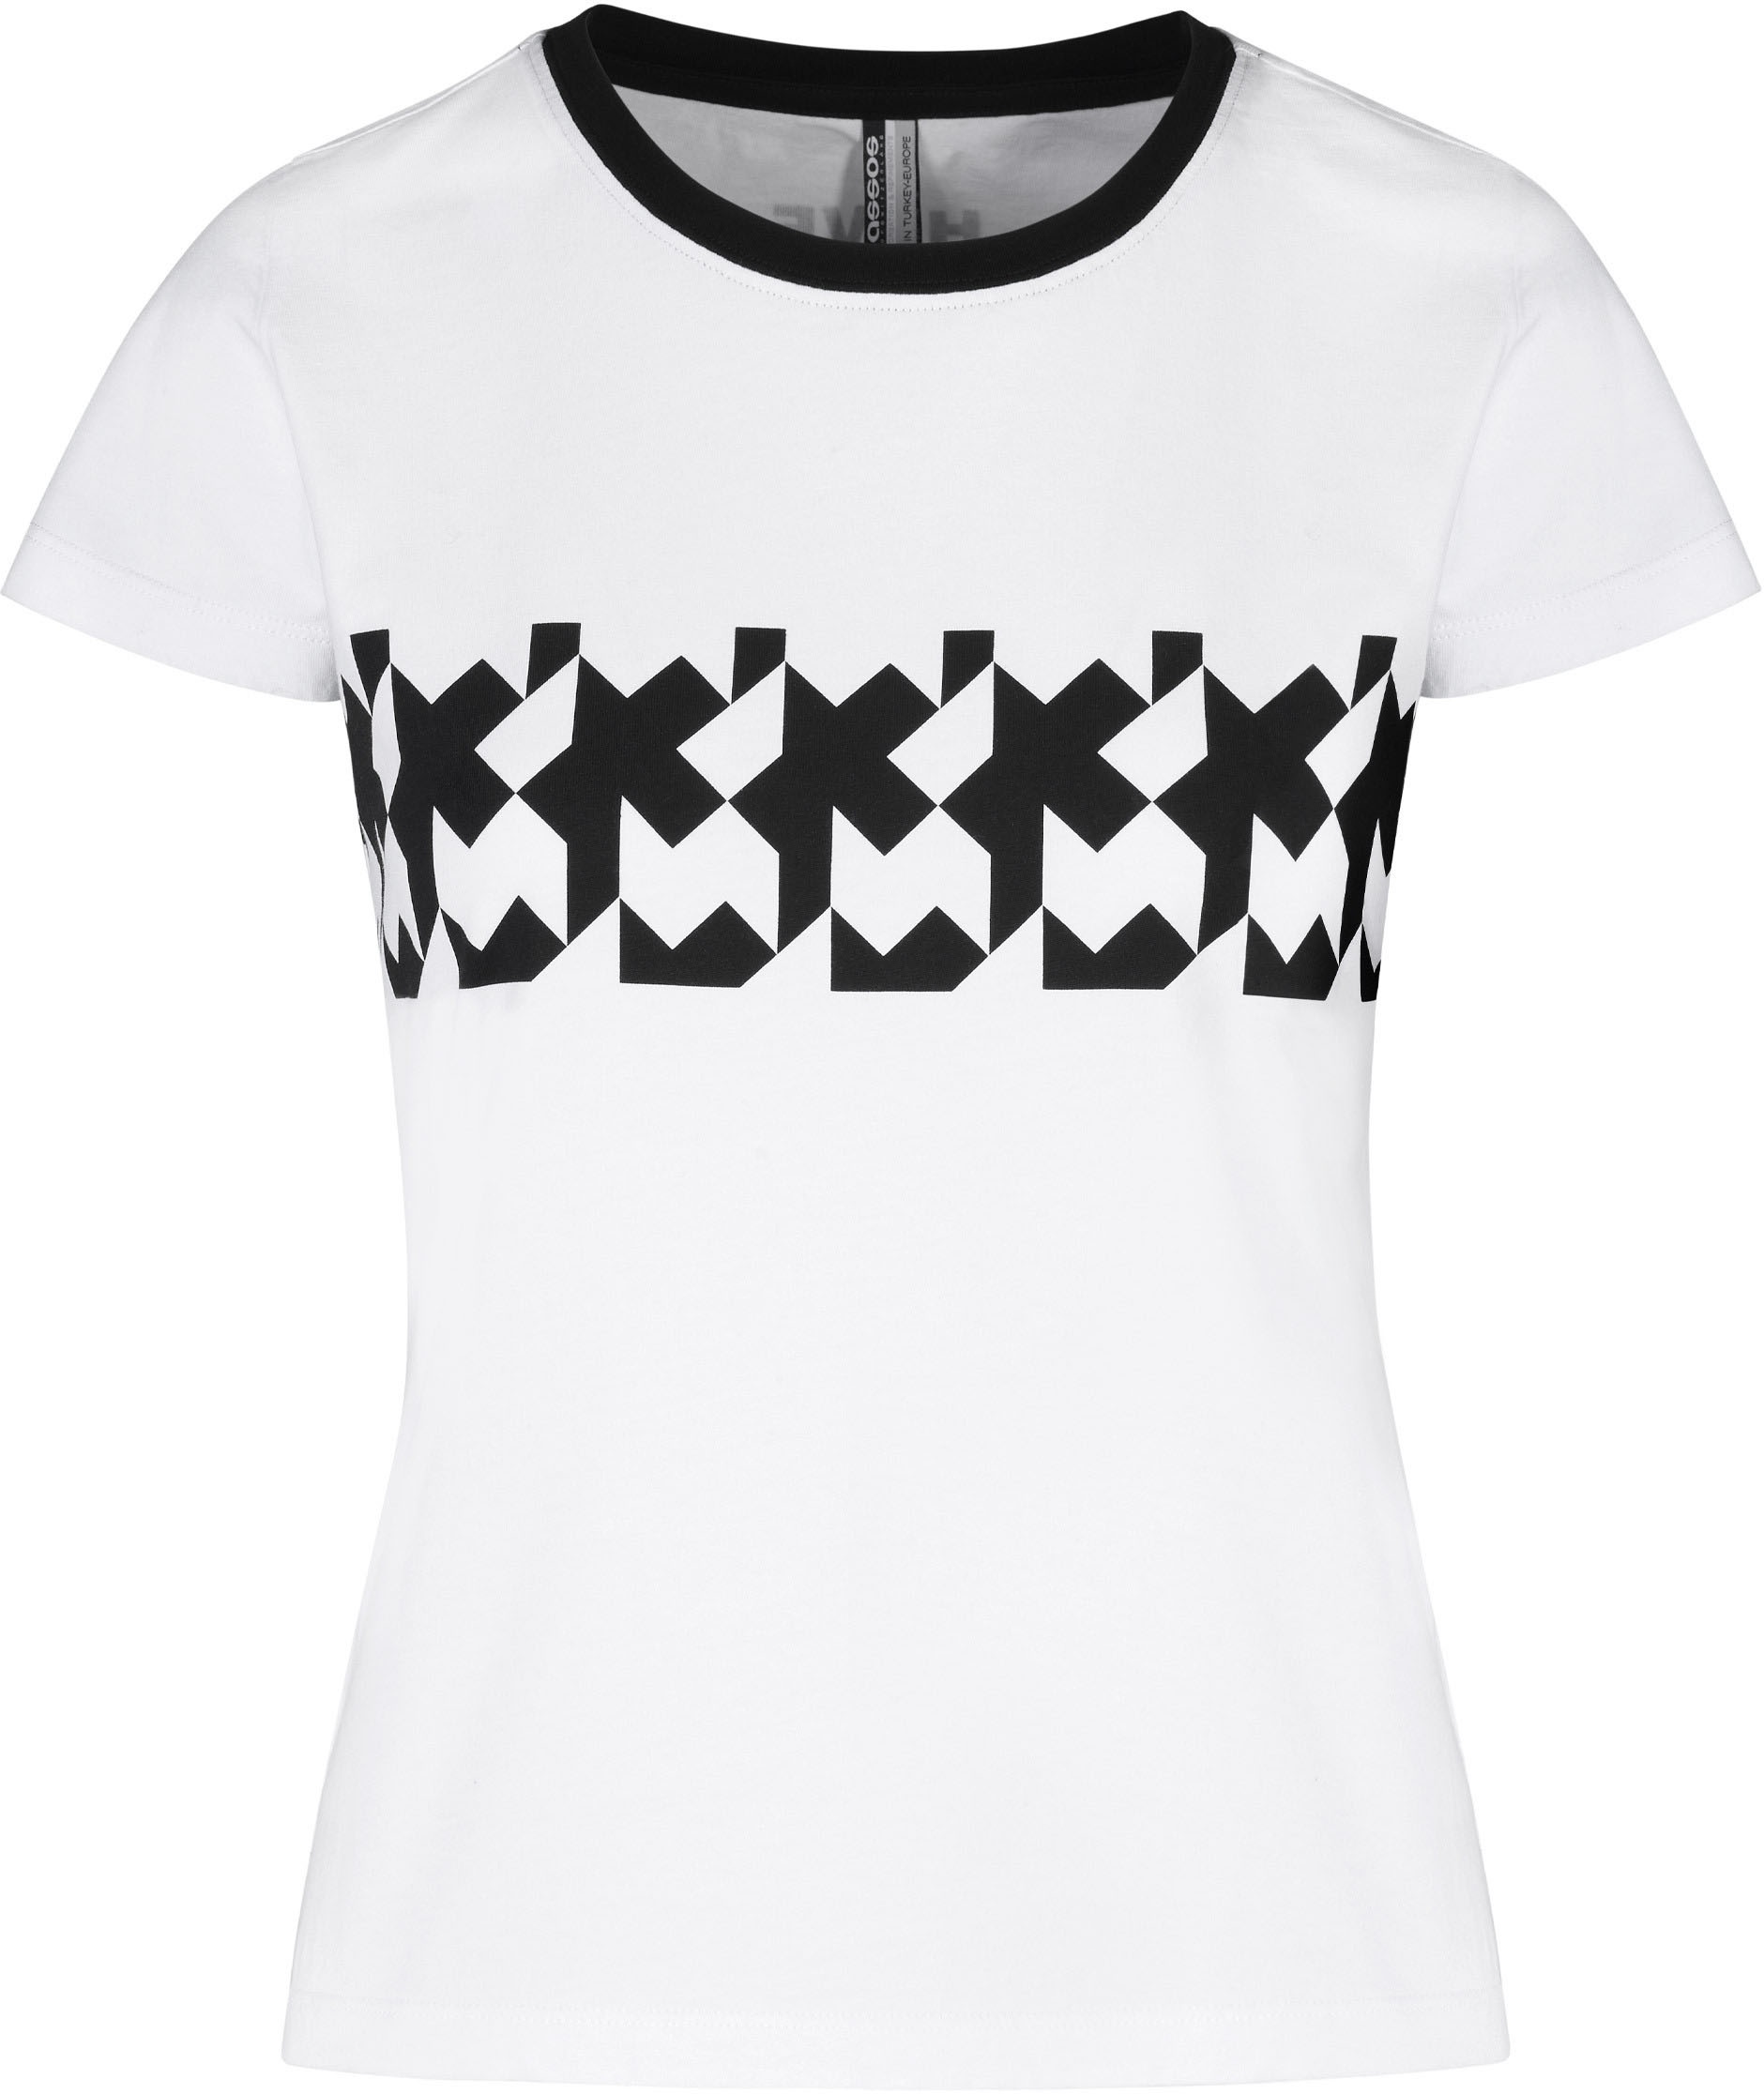 Beklædning - Merchandise - Assos SIGNATURE Women's Summer T-Shirt RS Griffe - Hvid